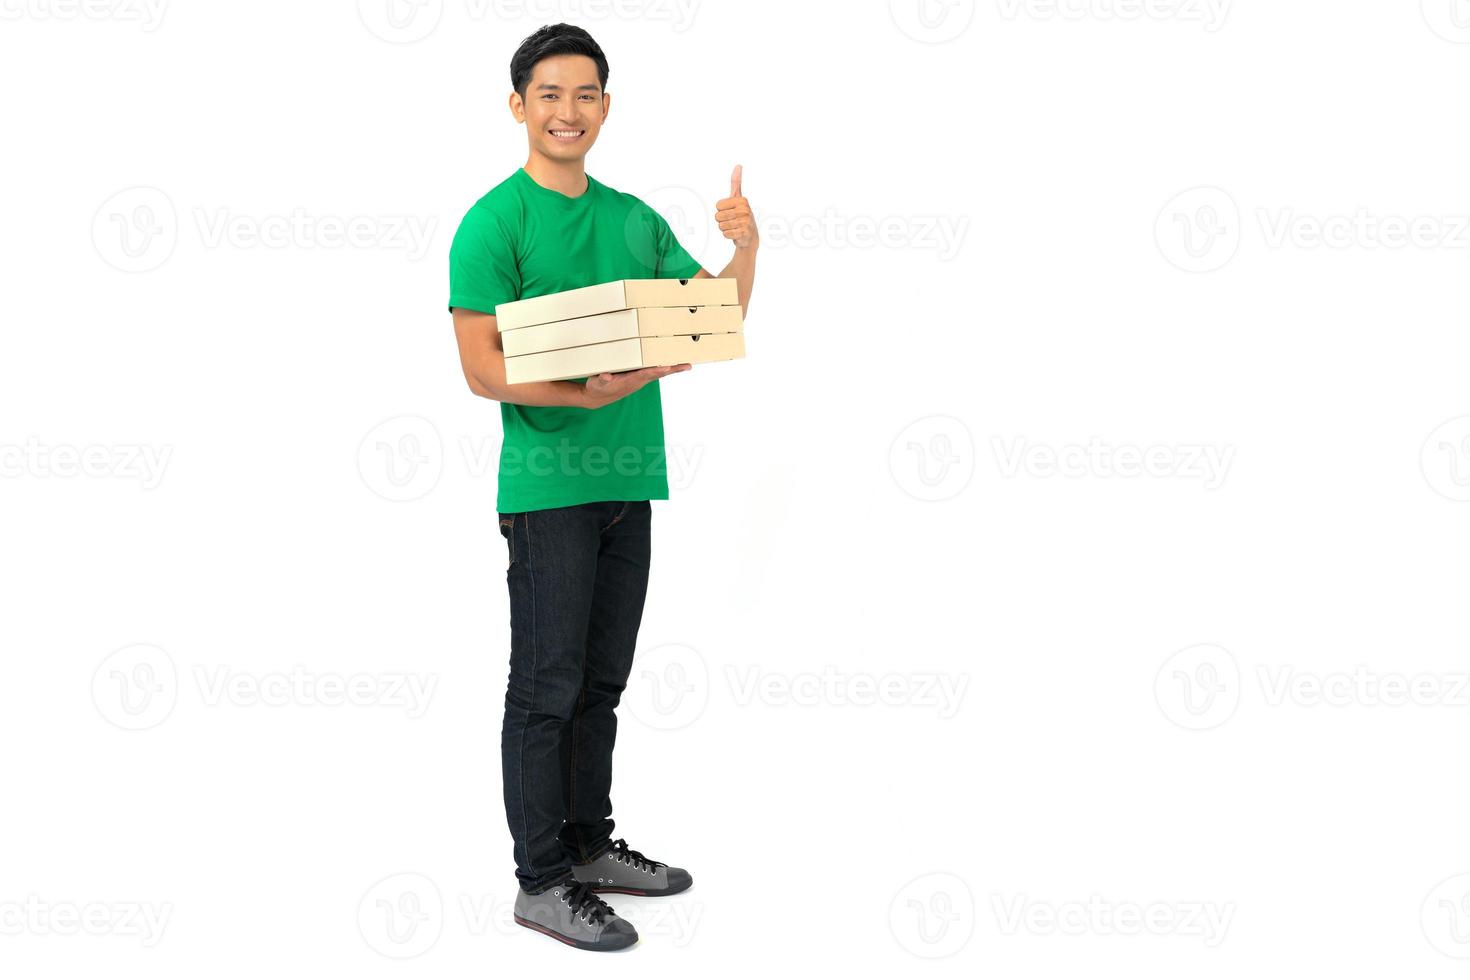 Empregado entregador sorridente com uniforme de camiseta em branco e cartão de crédito dando pedido de comida e segurando caixas de pizza foto